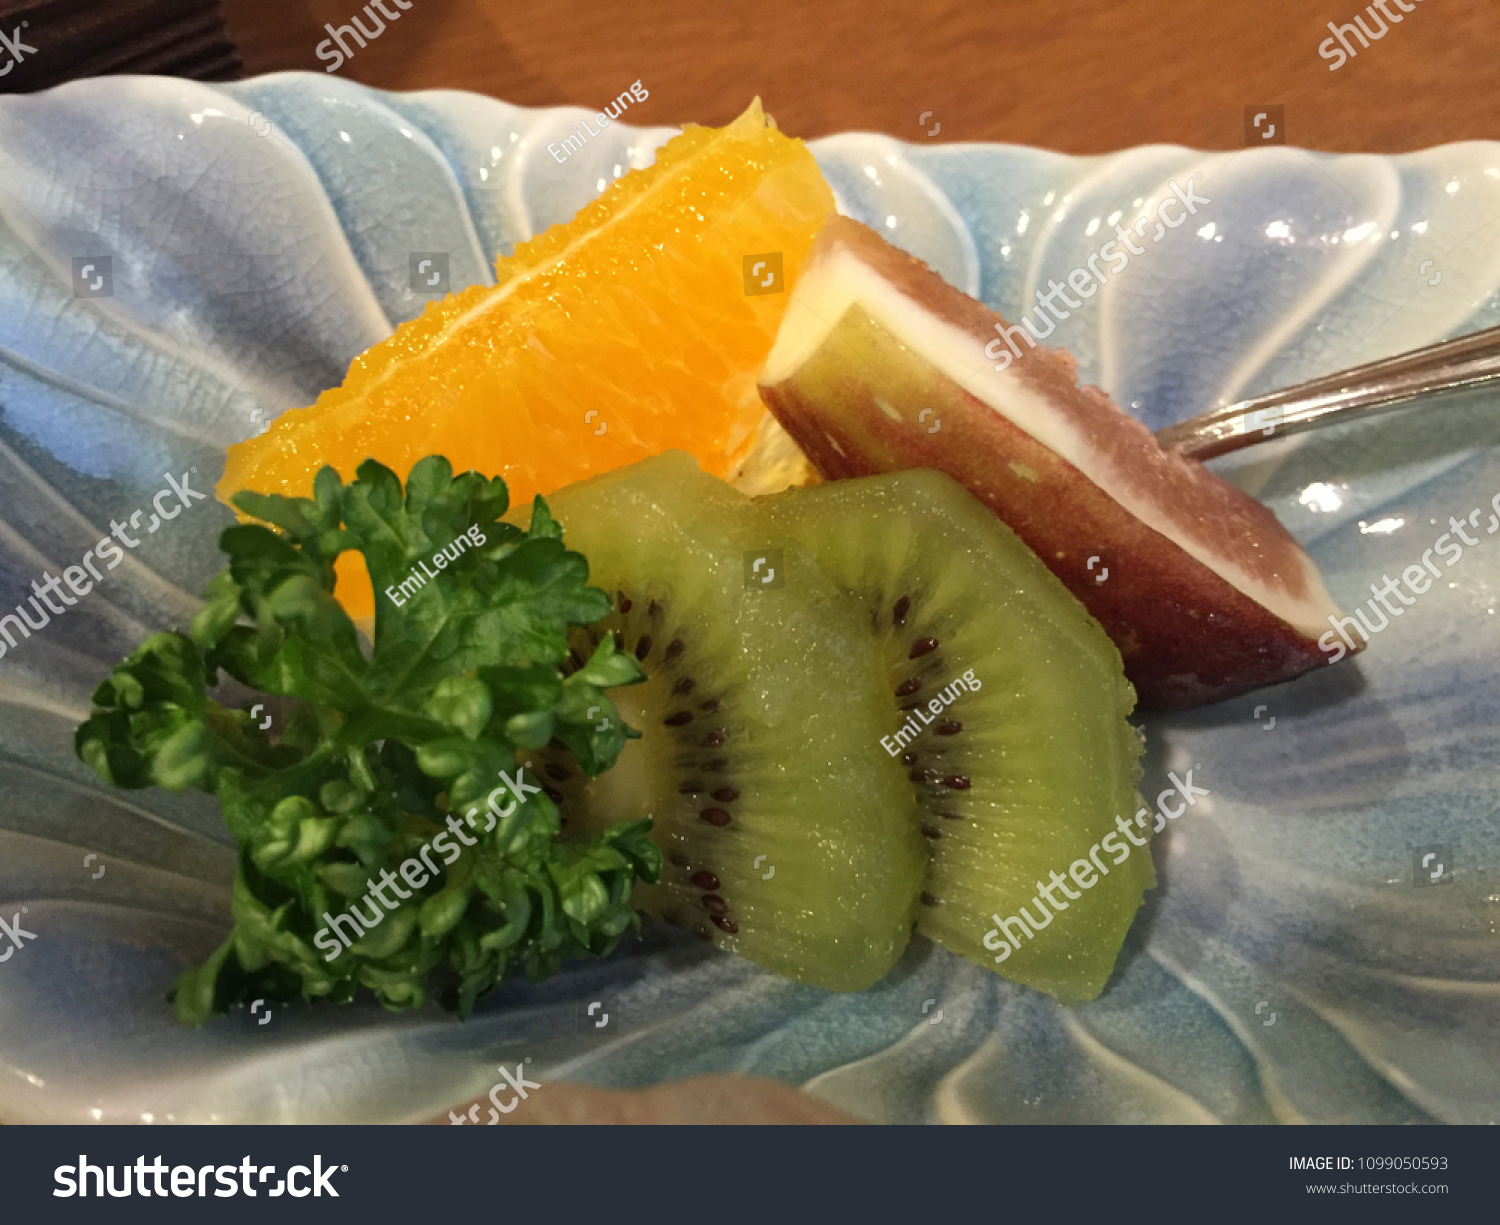 japanese fruit platter